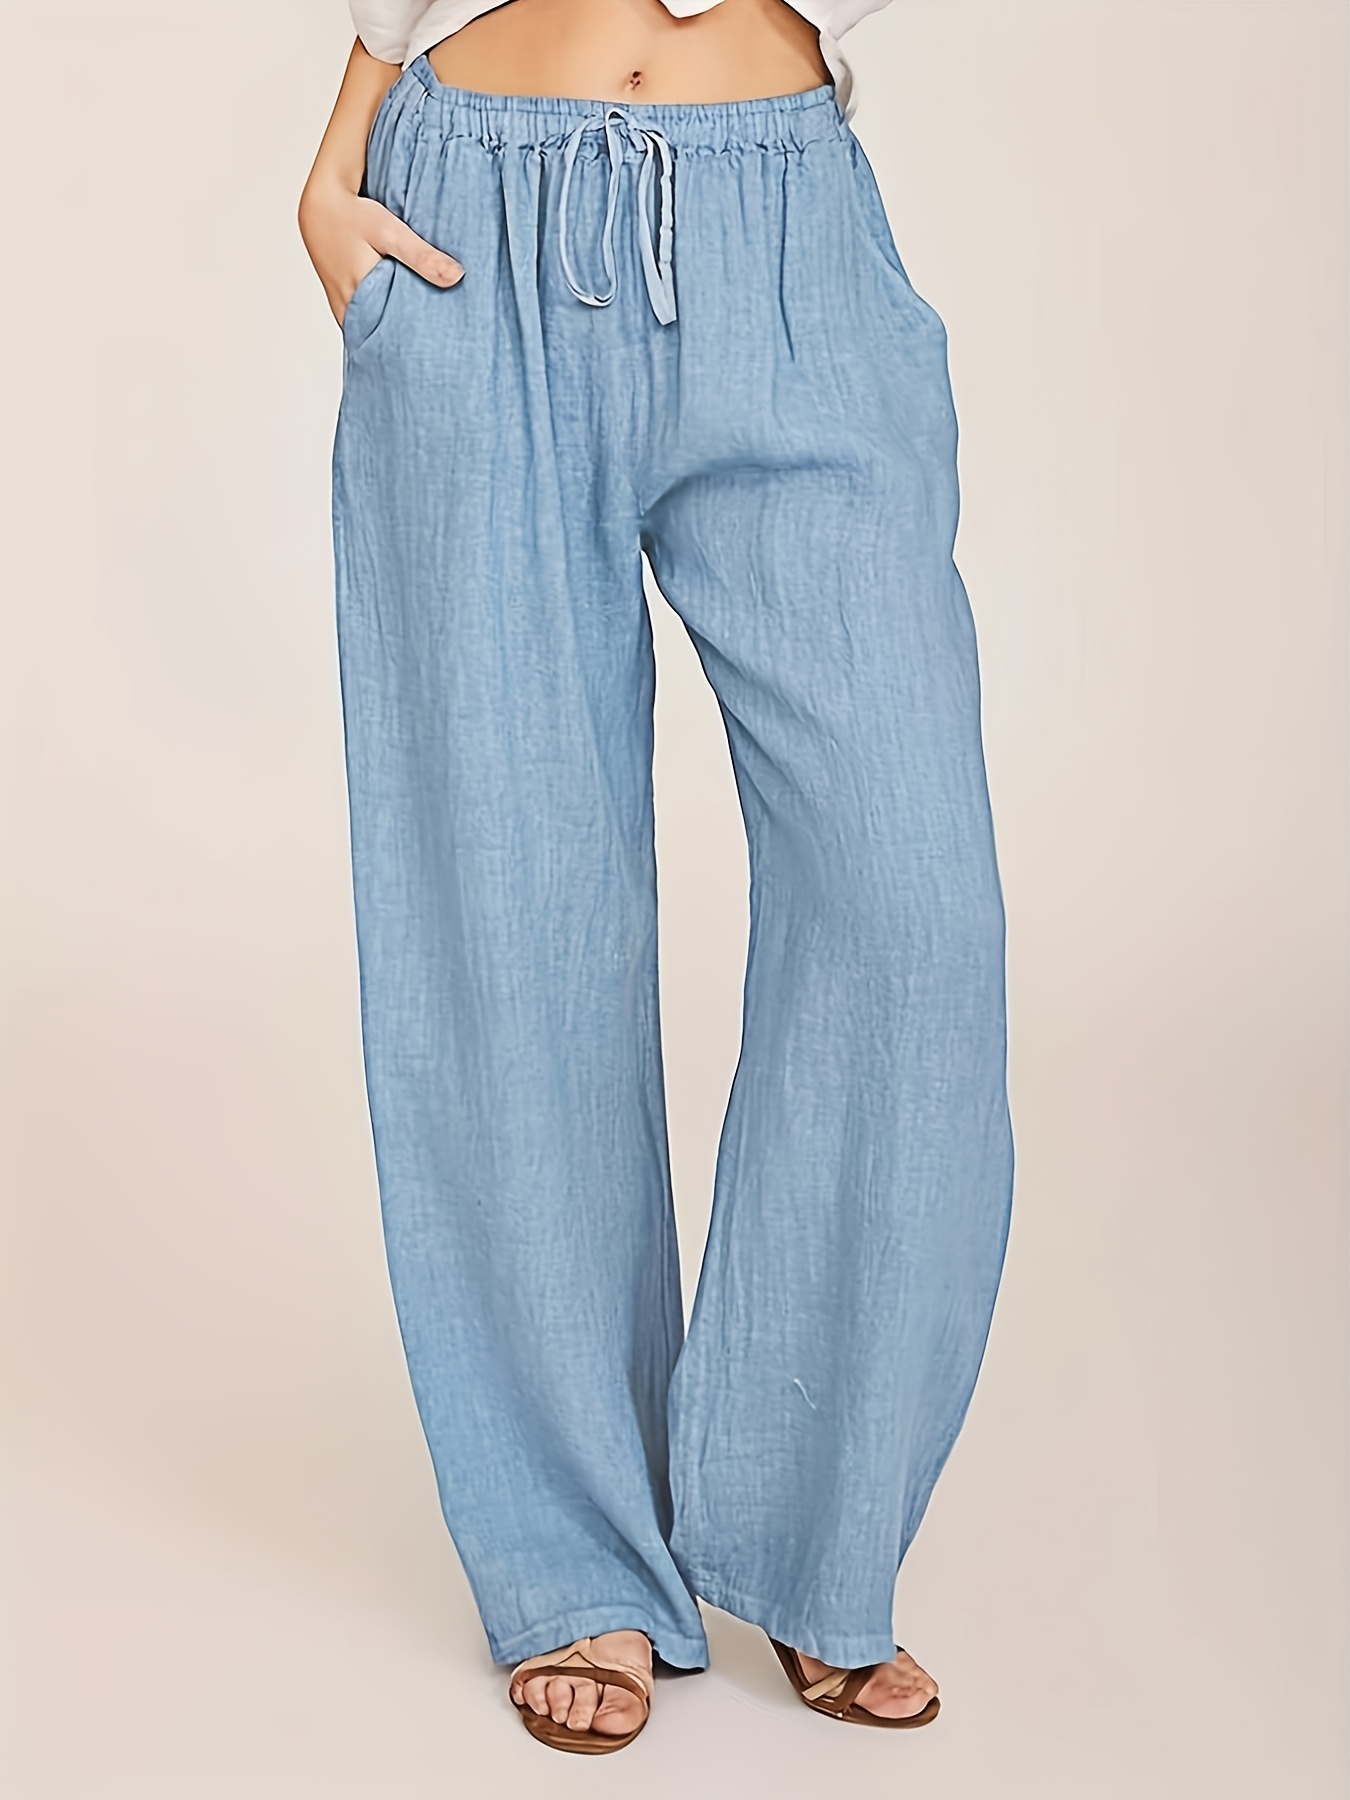 Wide Leg Pants for Women Summer Women's Fleece Lined Sweatpants Wide  Straight